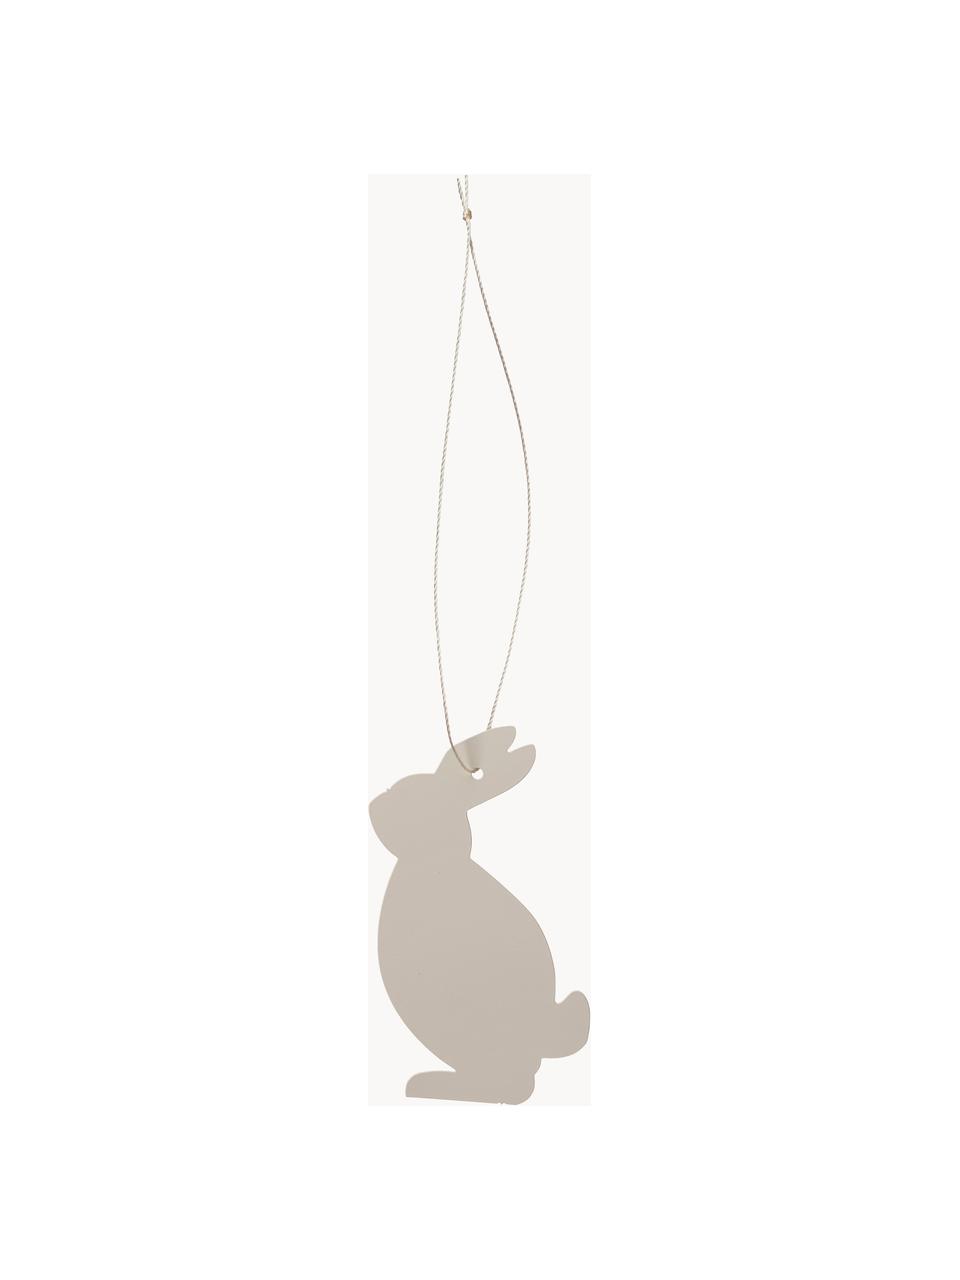 Oster-Dekoanhänger Hare, 4 Stück, Edelstahl, pulverbeschichtet, Greige, B 4 x H 6 cm